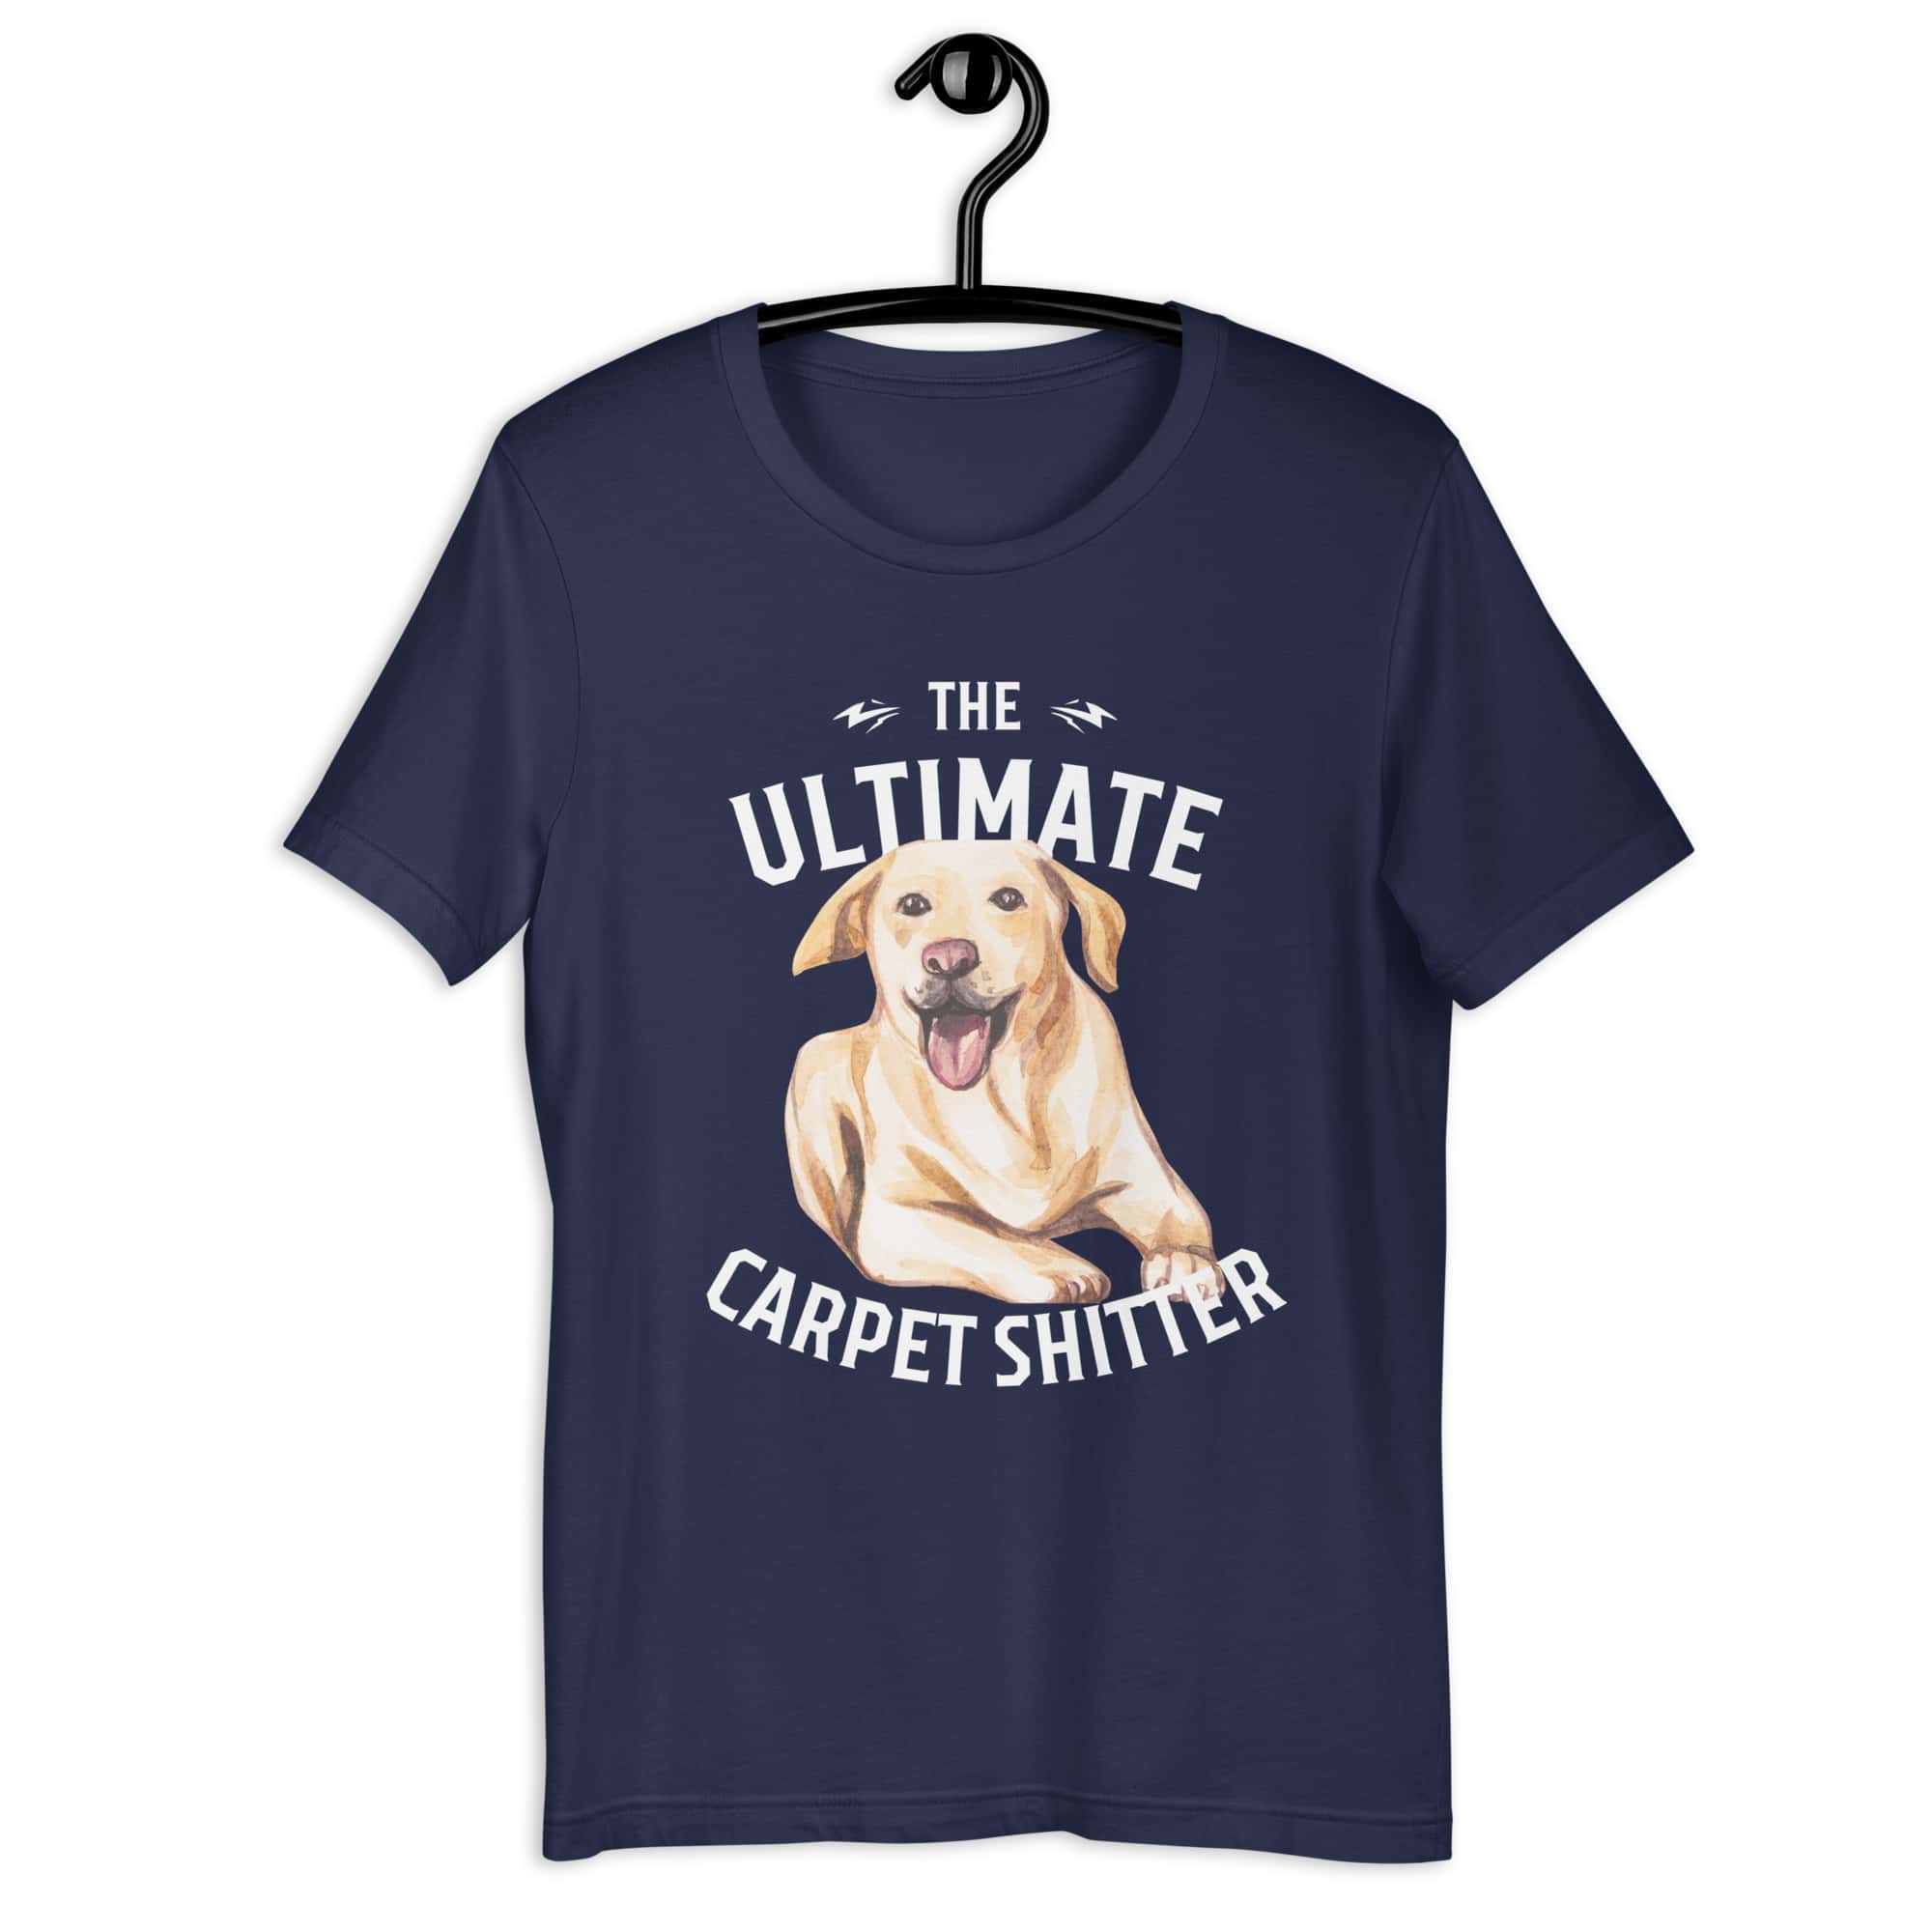 The Ultimate Carpet Shitter Funny Golden Retriever Unisex T-Shirt navy